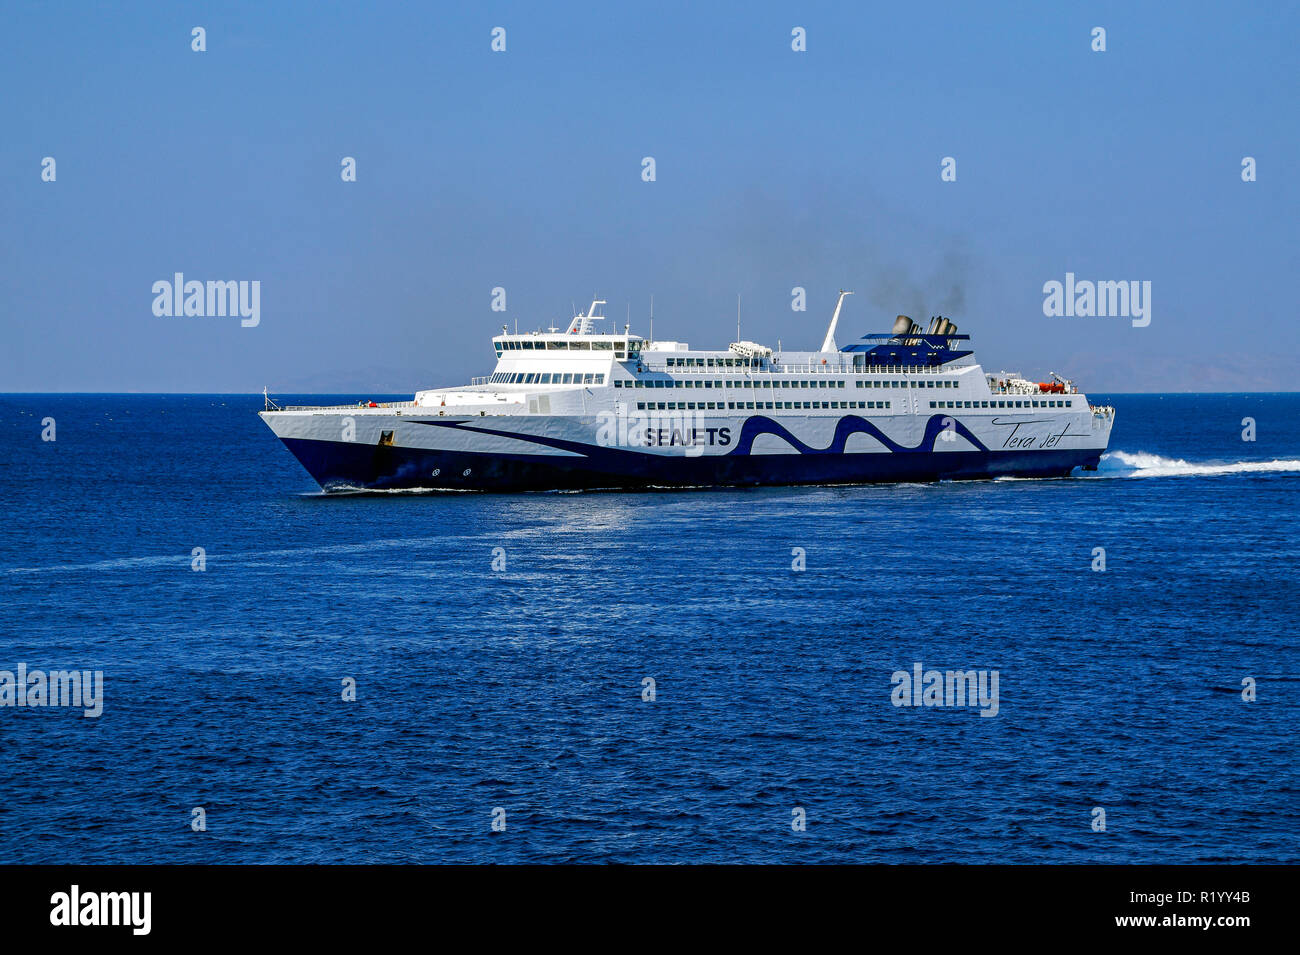 Seajets schnelles Auto- und Passagierfähre Tera Jet in der Nähe von Mykonos Stadt auf der Insel Mykonos in den Kykladen Gruppe in der Ägäis Griechenland Stockfoto